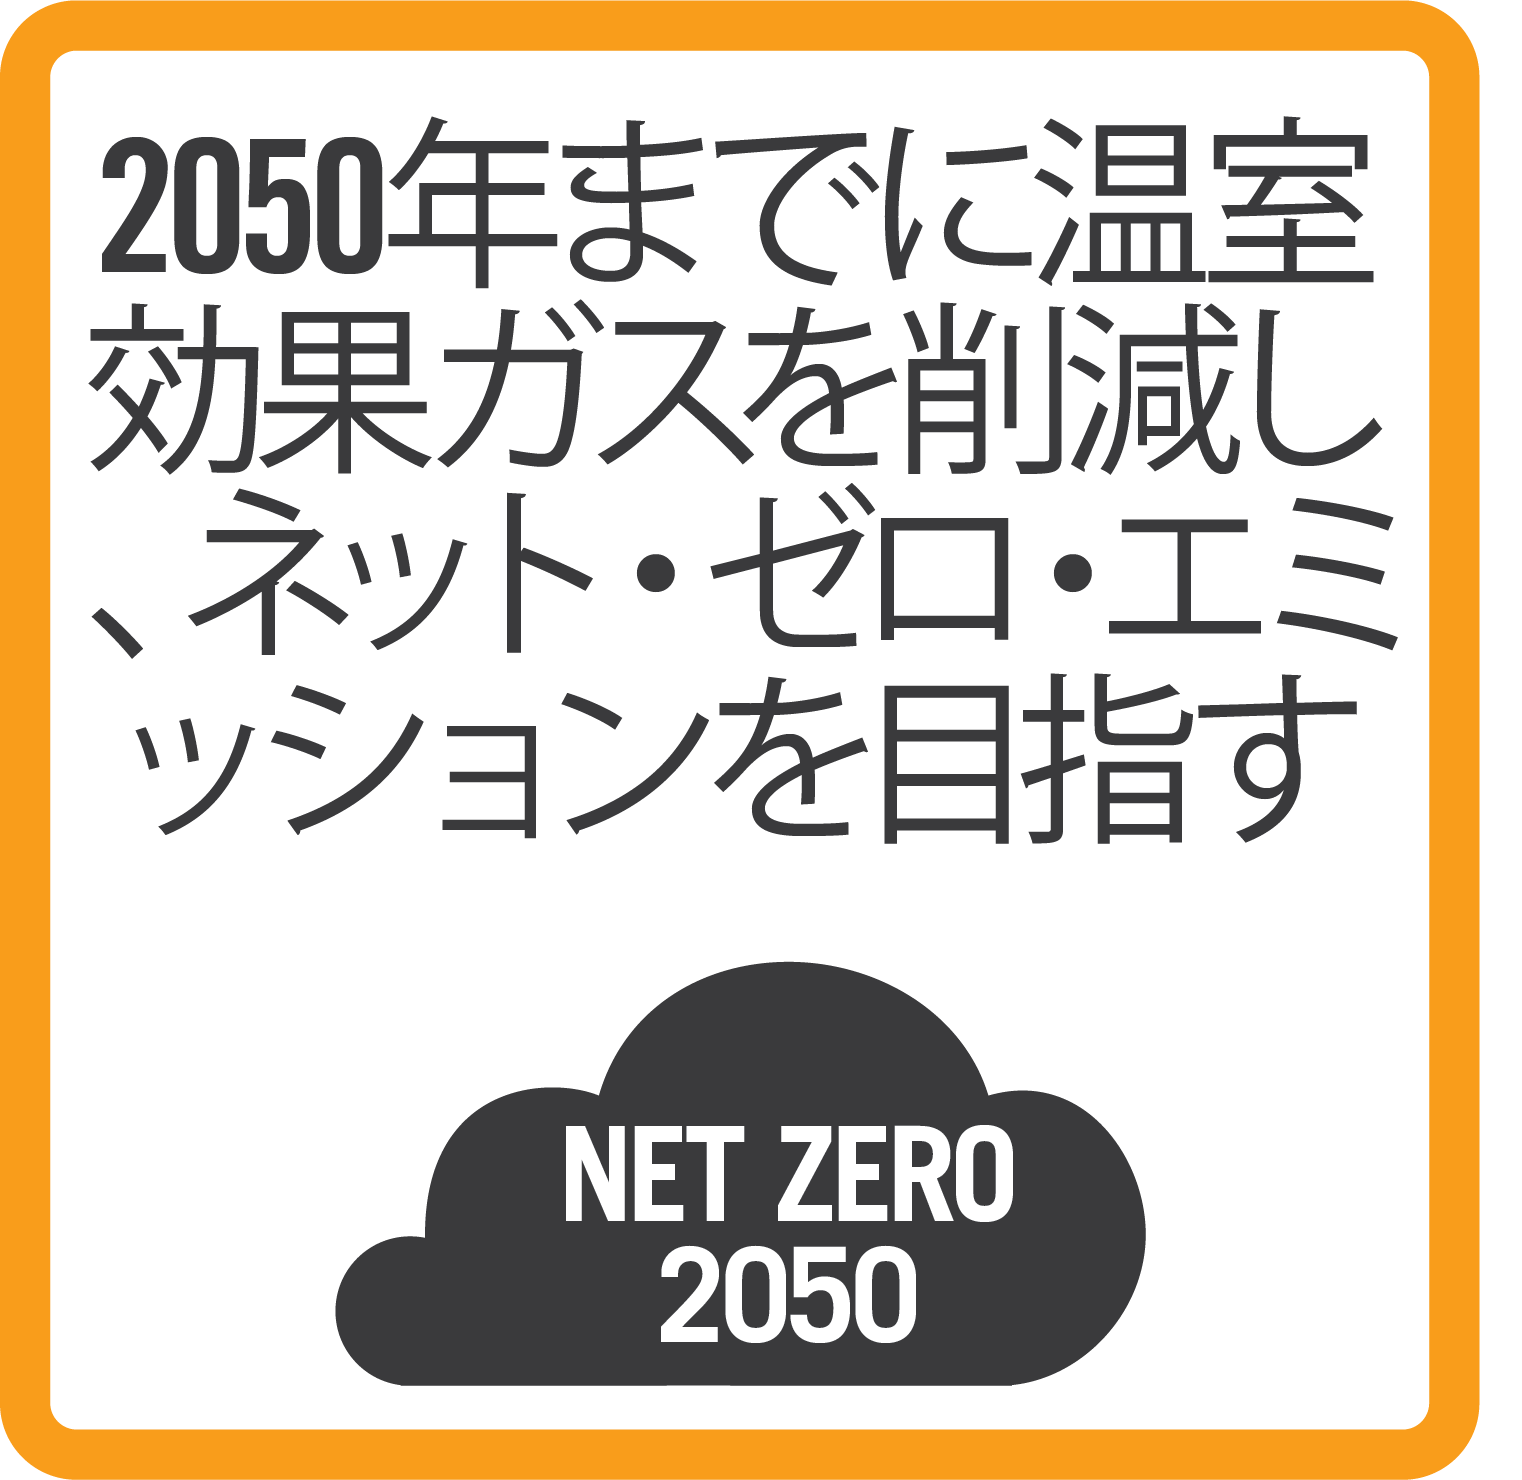 Sustainability zero emissions_B_japanese